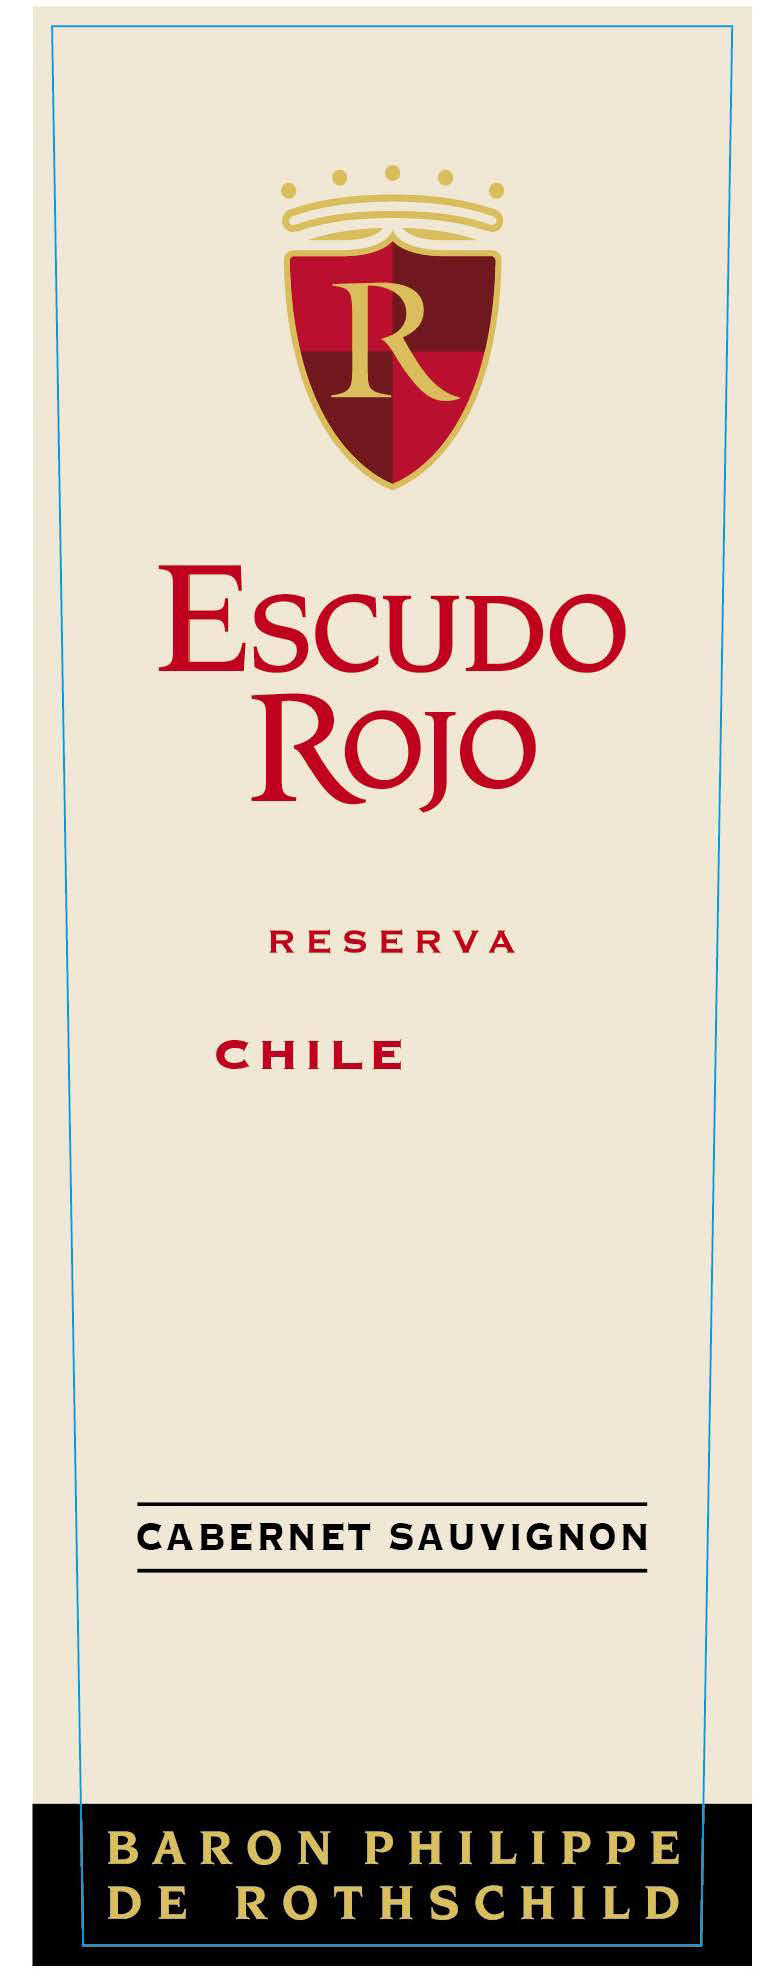 Escudo Rojo - Cabernet Sauvignon Reserva label